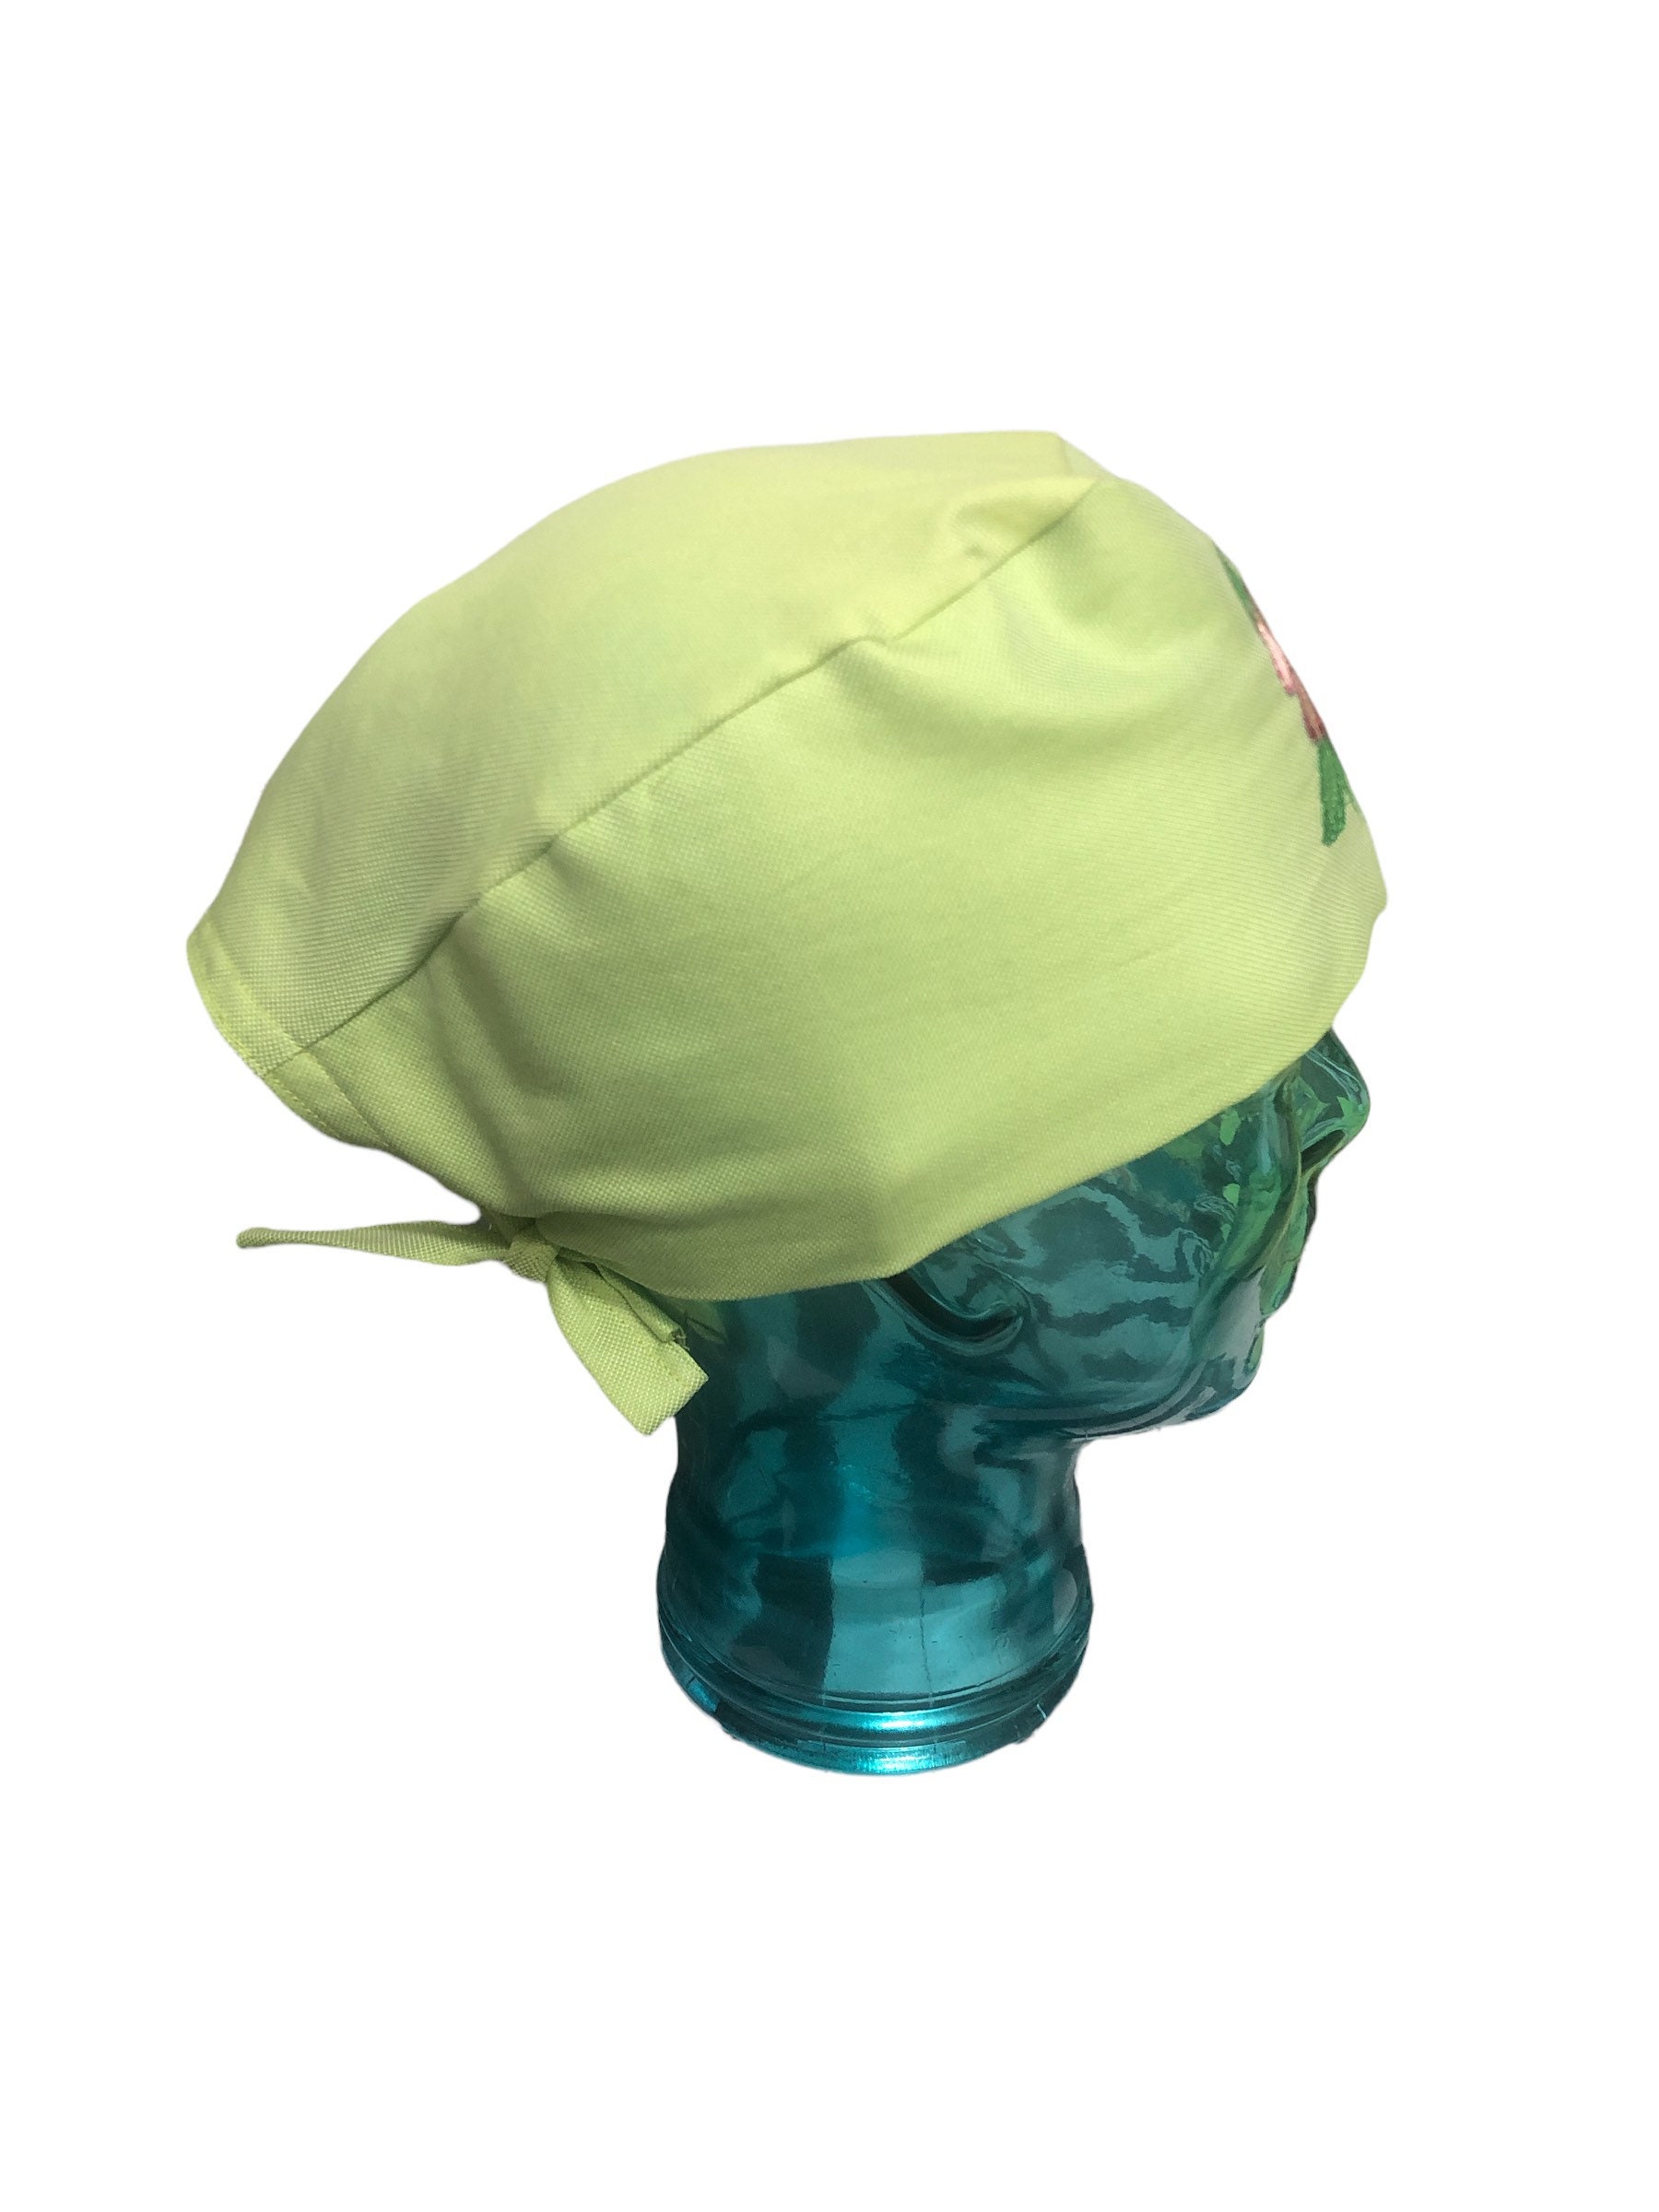 Accessori Cappelli e berretti Cappellini chirurgici Tropical Summer lime green scrub cap/ tropical scrub cap/Women surgical scrub hat 